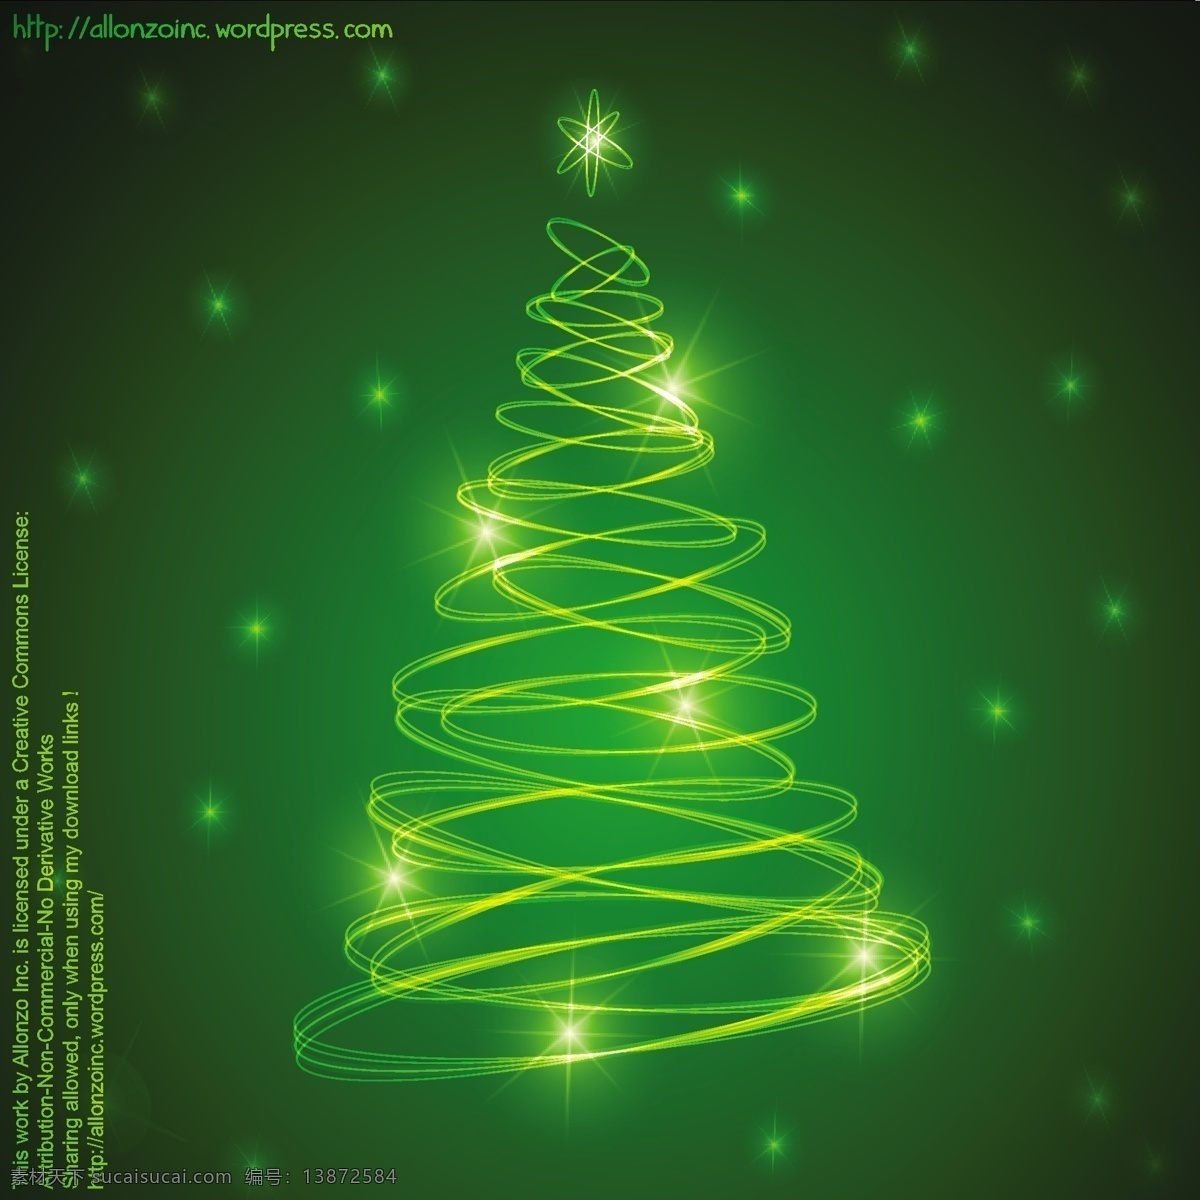 闪闪 发光 绿色 圣诞树 形状 螺旋 环 背景壁纸 庆典和聚会 圣诞节 节日和季节性 装饰装潢 模板和模型